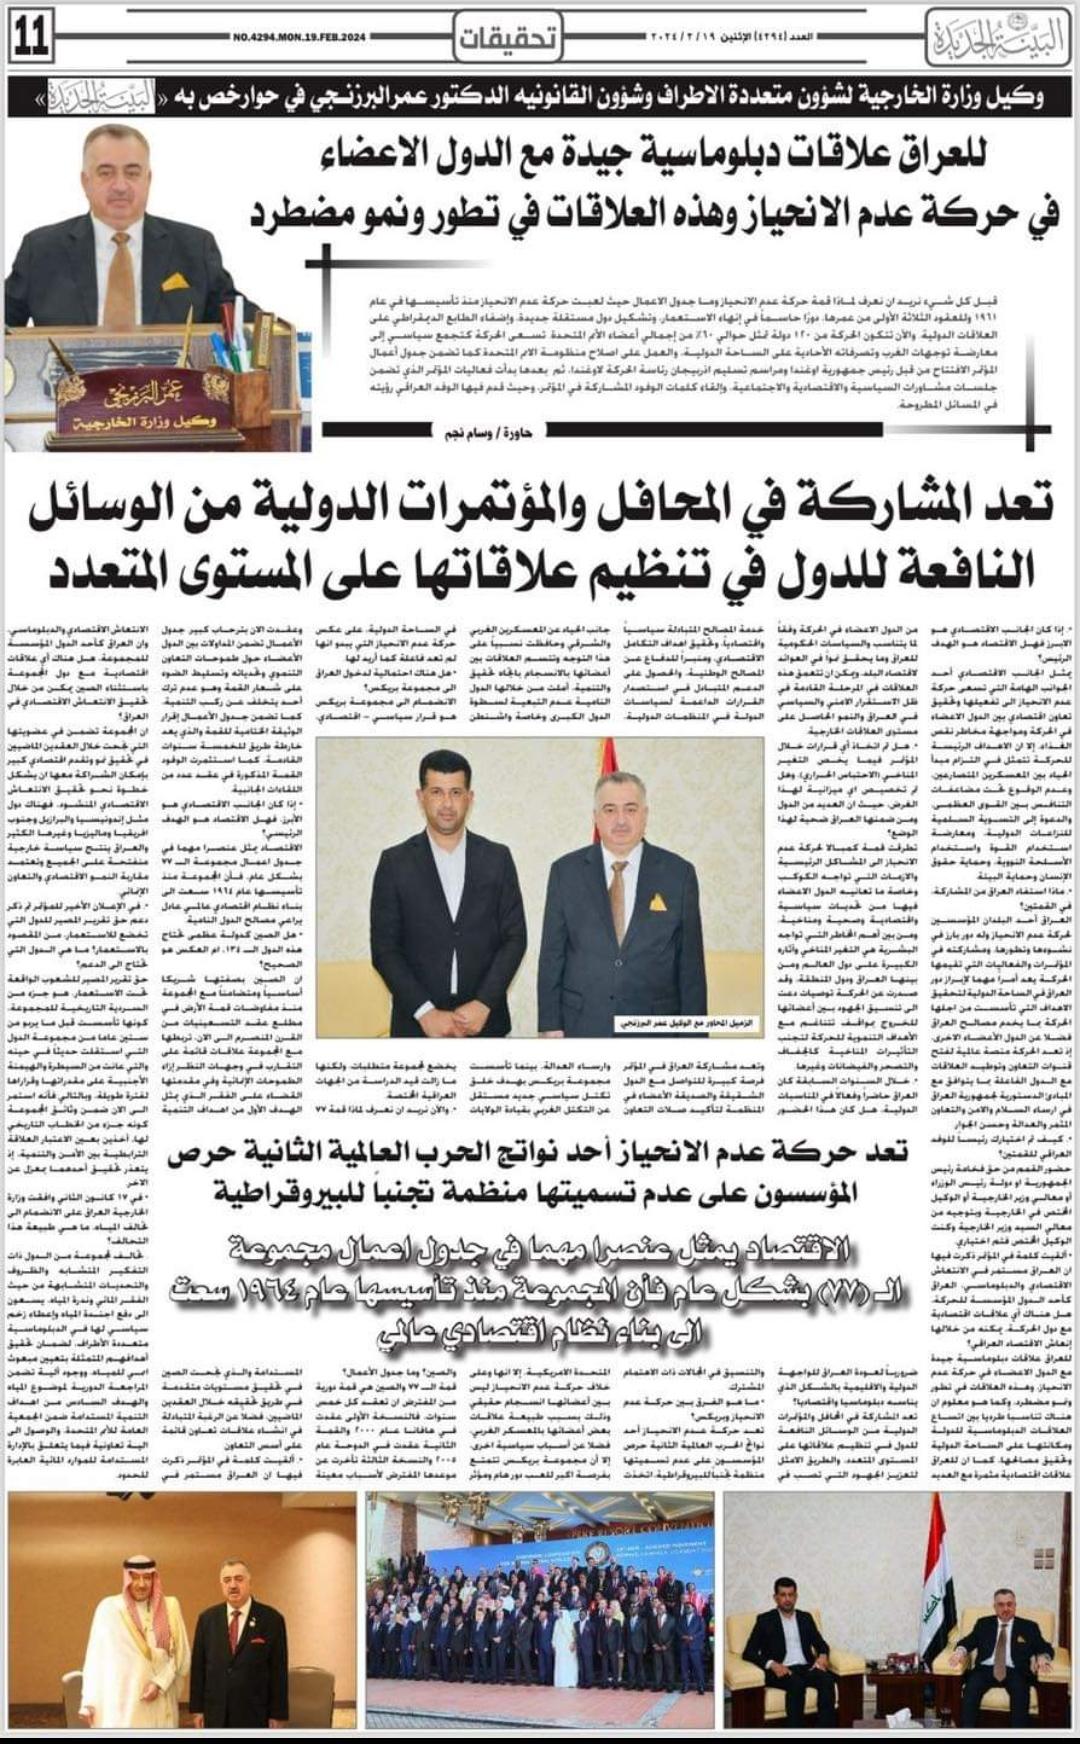 جريدة (البينة الجديدة) العراقية تُجري حوارًا صحفيًا مع وكيل وزارة الخارجية للشؤون متعددة الأطراف والشؤون القانونية